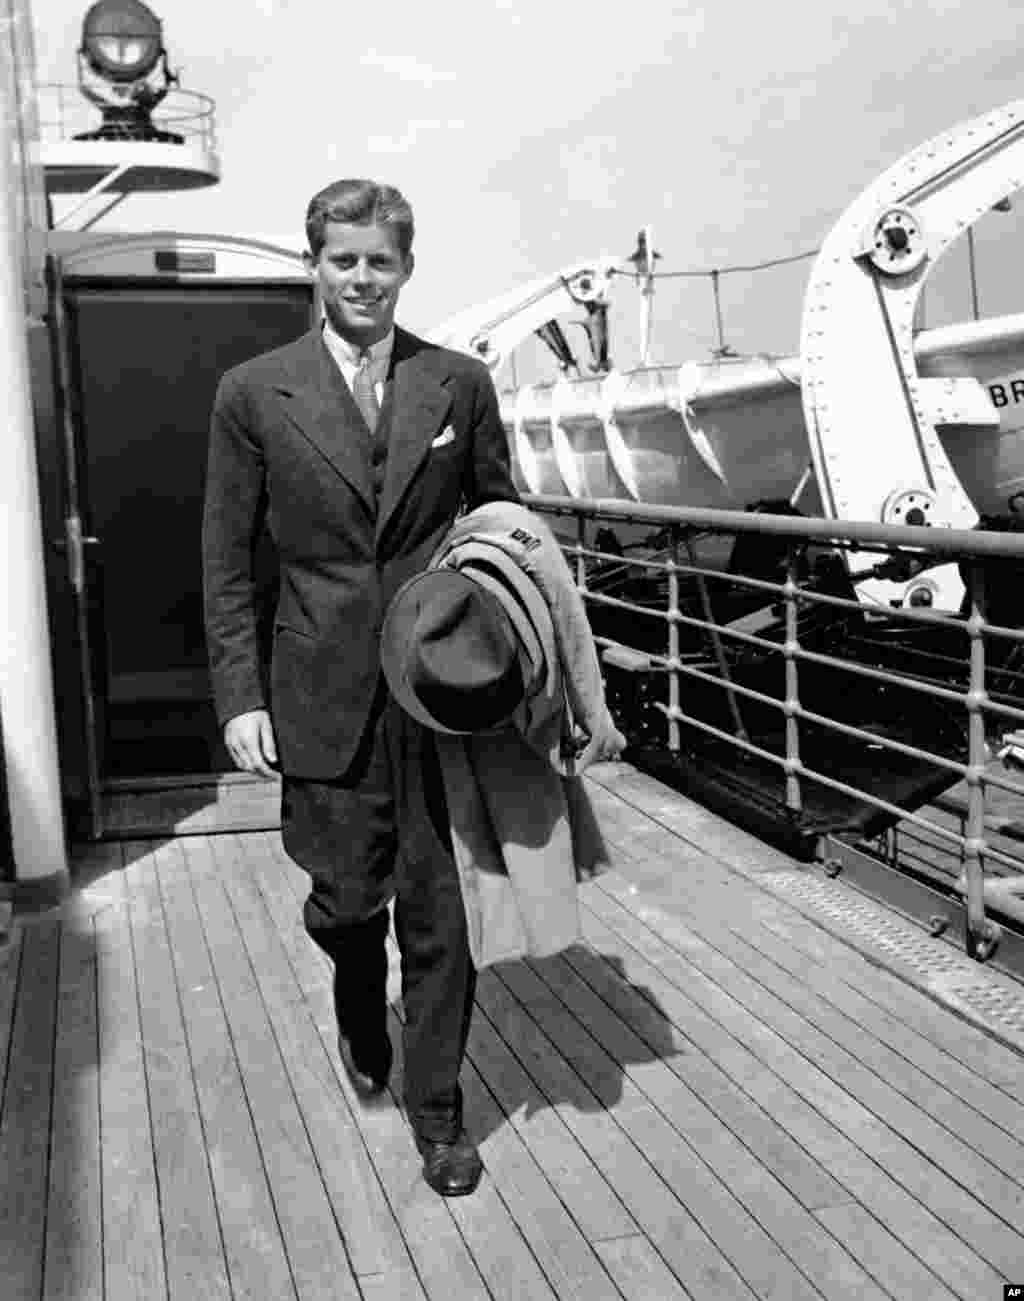 جان اف کندی، از رؤسای جمهور امریکا، حین بازگشت از تعطیلات اروپا در ۱۹۳۸. سه سال پیش از این&zwnj;که به نیروی دریایی بپیوندد. اقدامی که راه او را برای احراز منصب در کنگره و سپس رسیدن به ریاست&zwnj;جمهوری هموار کرد.